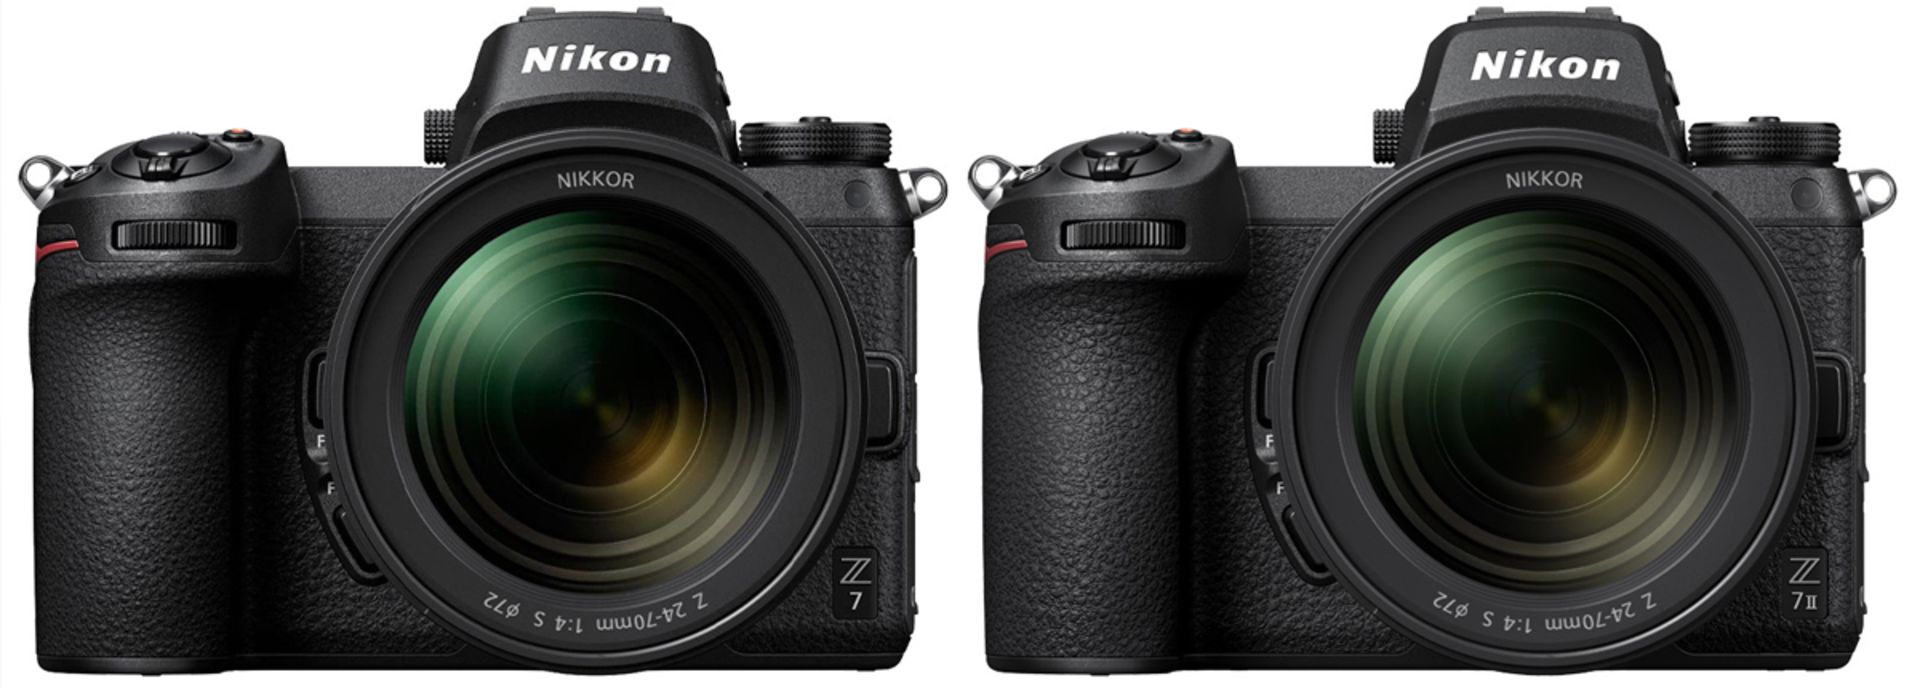 مرجع متخصصين ايران دوربين نيكون Nikon Z7 II در كنار نيكون زد ۷ مدل معمولي